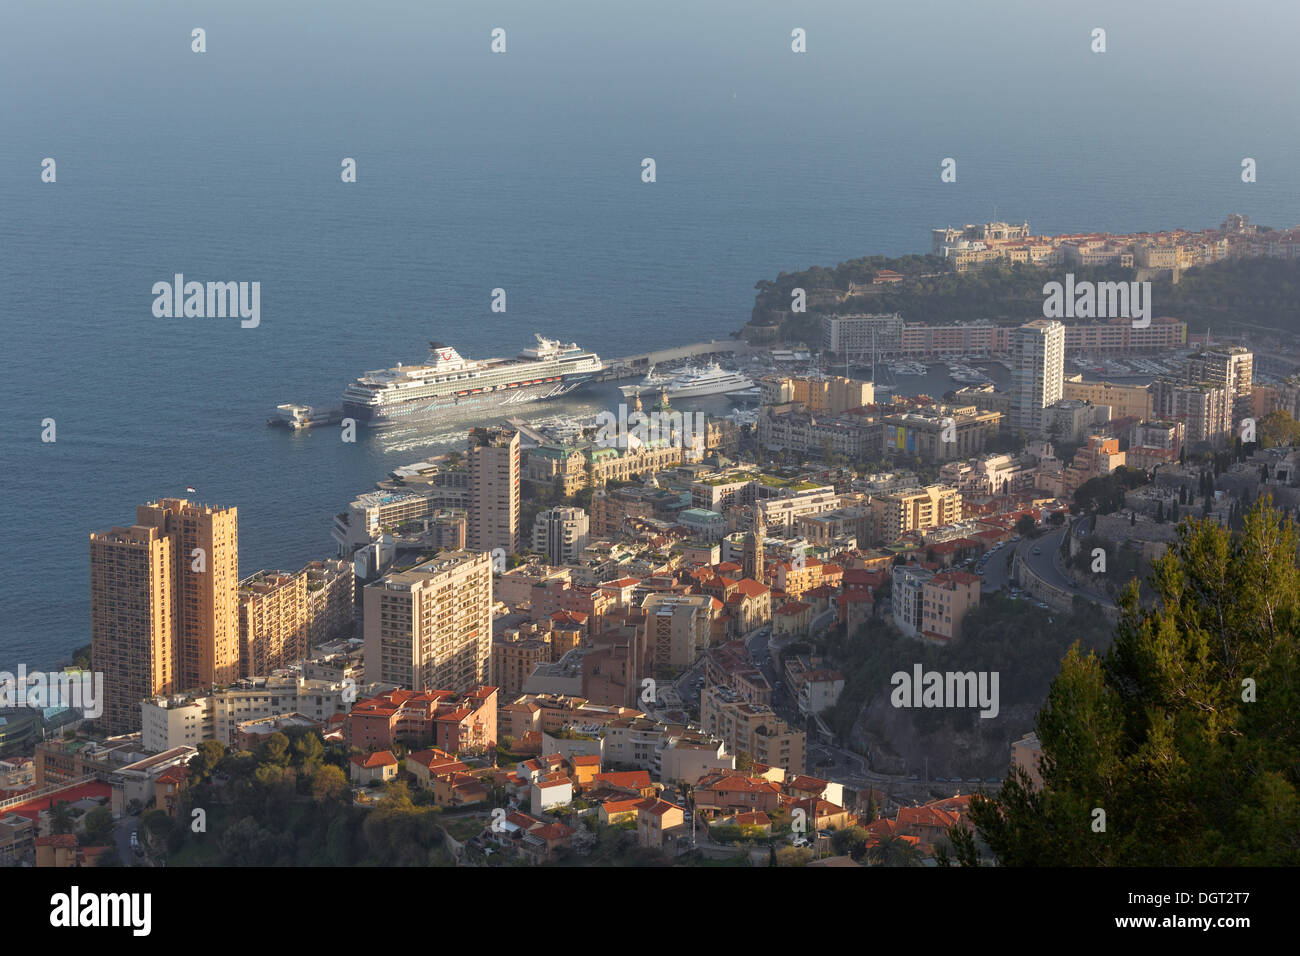 Vue sur la Principauté de Monaco, 'Mein Schiff 1' amarré dans le port Banque D'Images